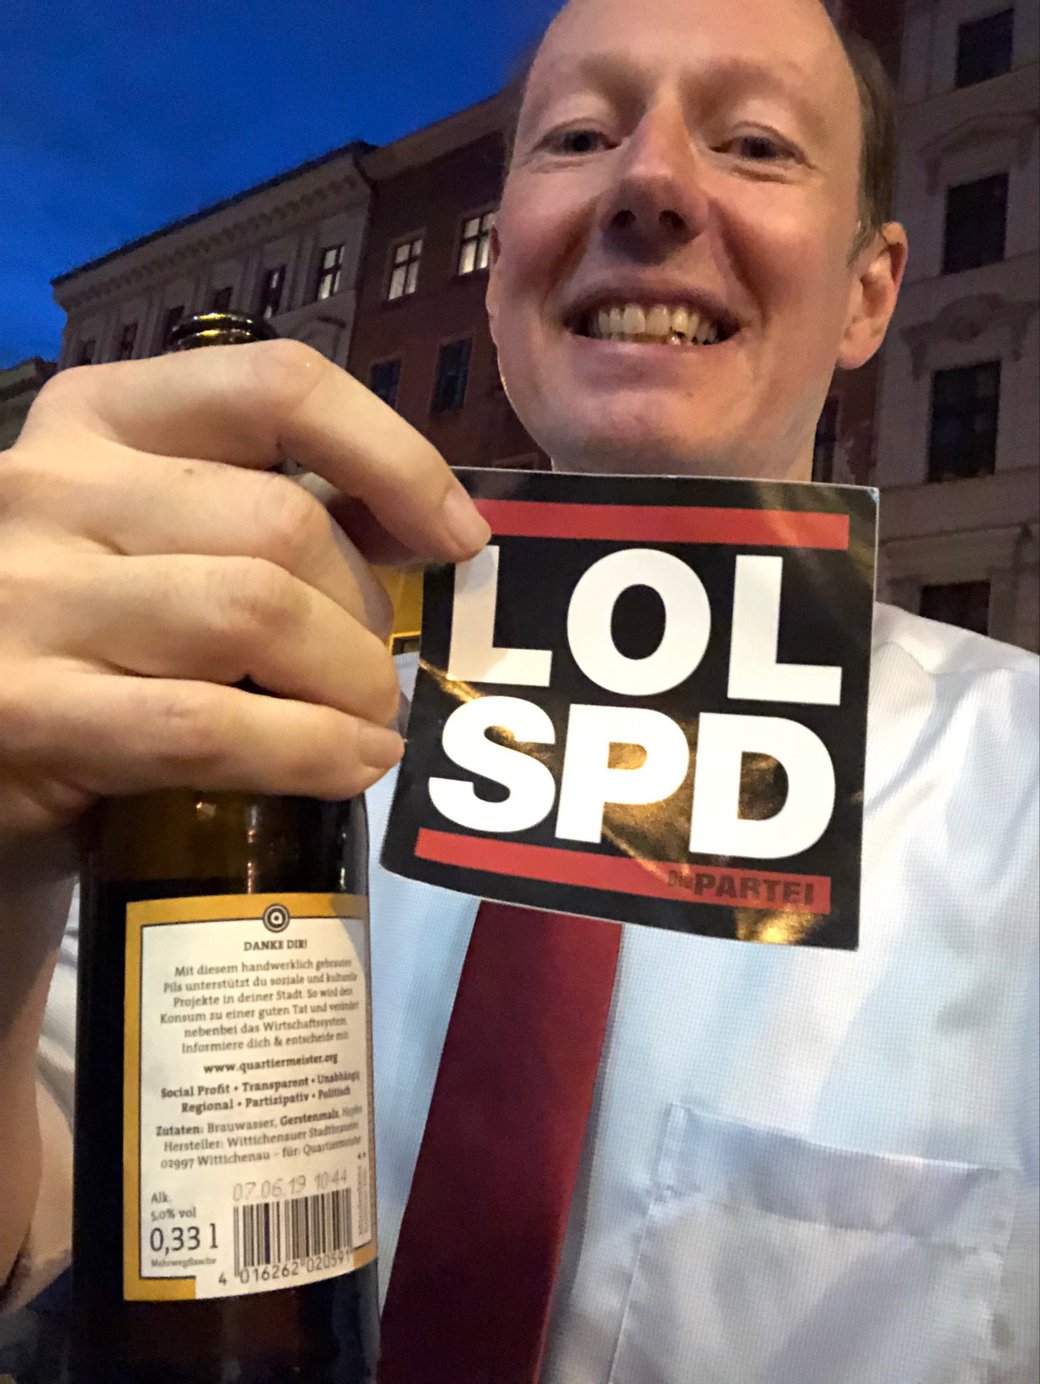 LOL SPD #diepartei